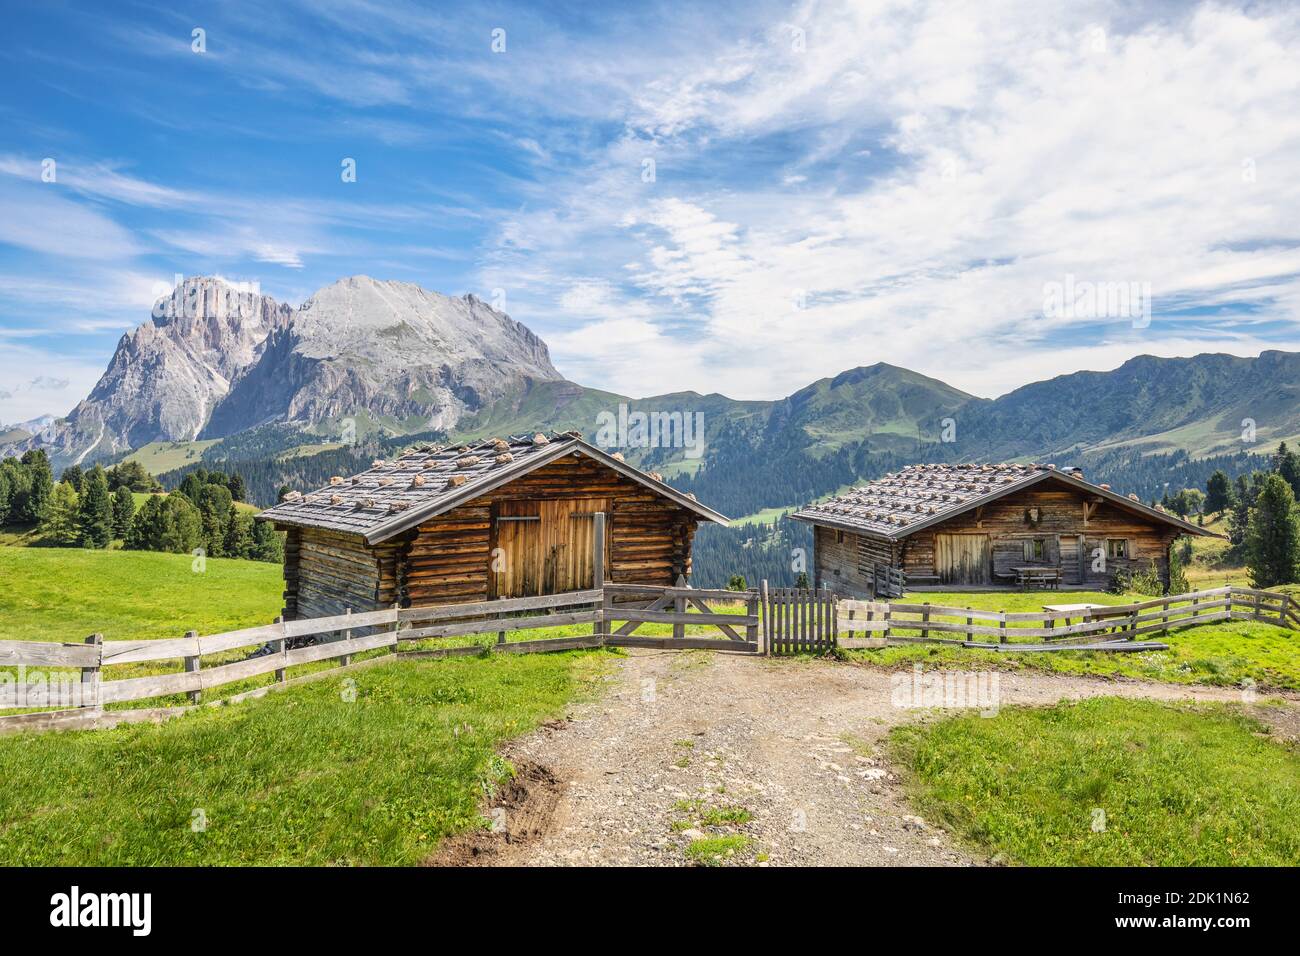 Traditionelle Berghütten auf den Weiden der seiser alm, mit dem Plattkofel im Hintergrund, Provinz bozen, Südtirol, Italien, Europa Stockfoto